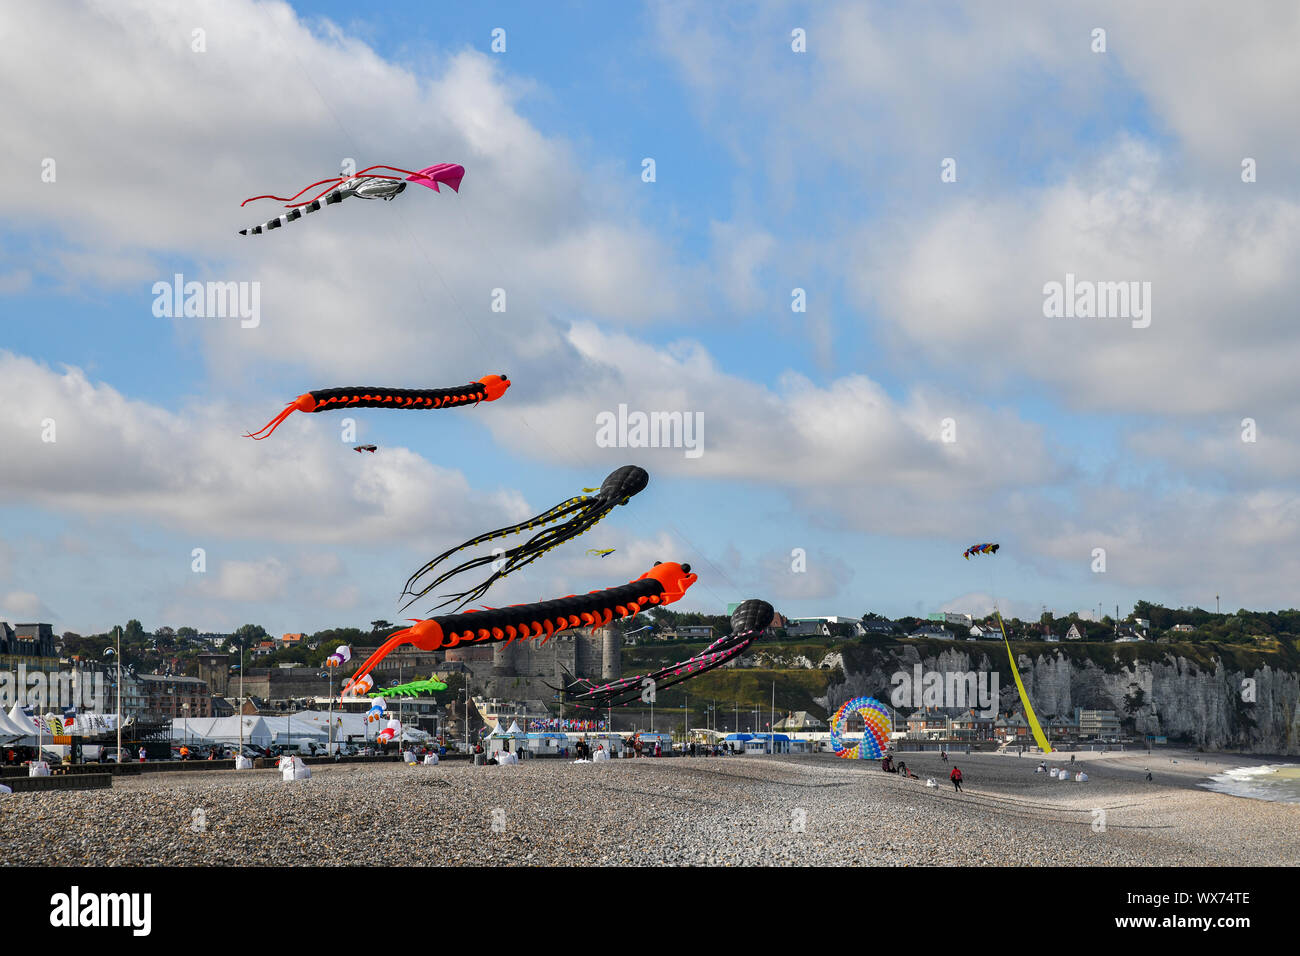 DIEPPE, FRANCE - SEPTEMBER 11, 2018: Kite festival. Octopus kites and flying caterpillar in the sky in Atlantic ocean Stock Photo